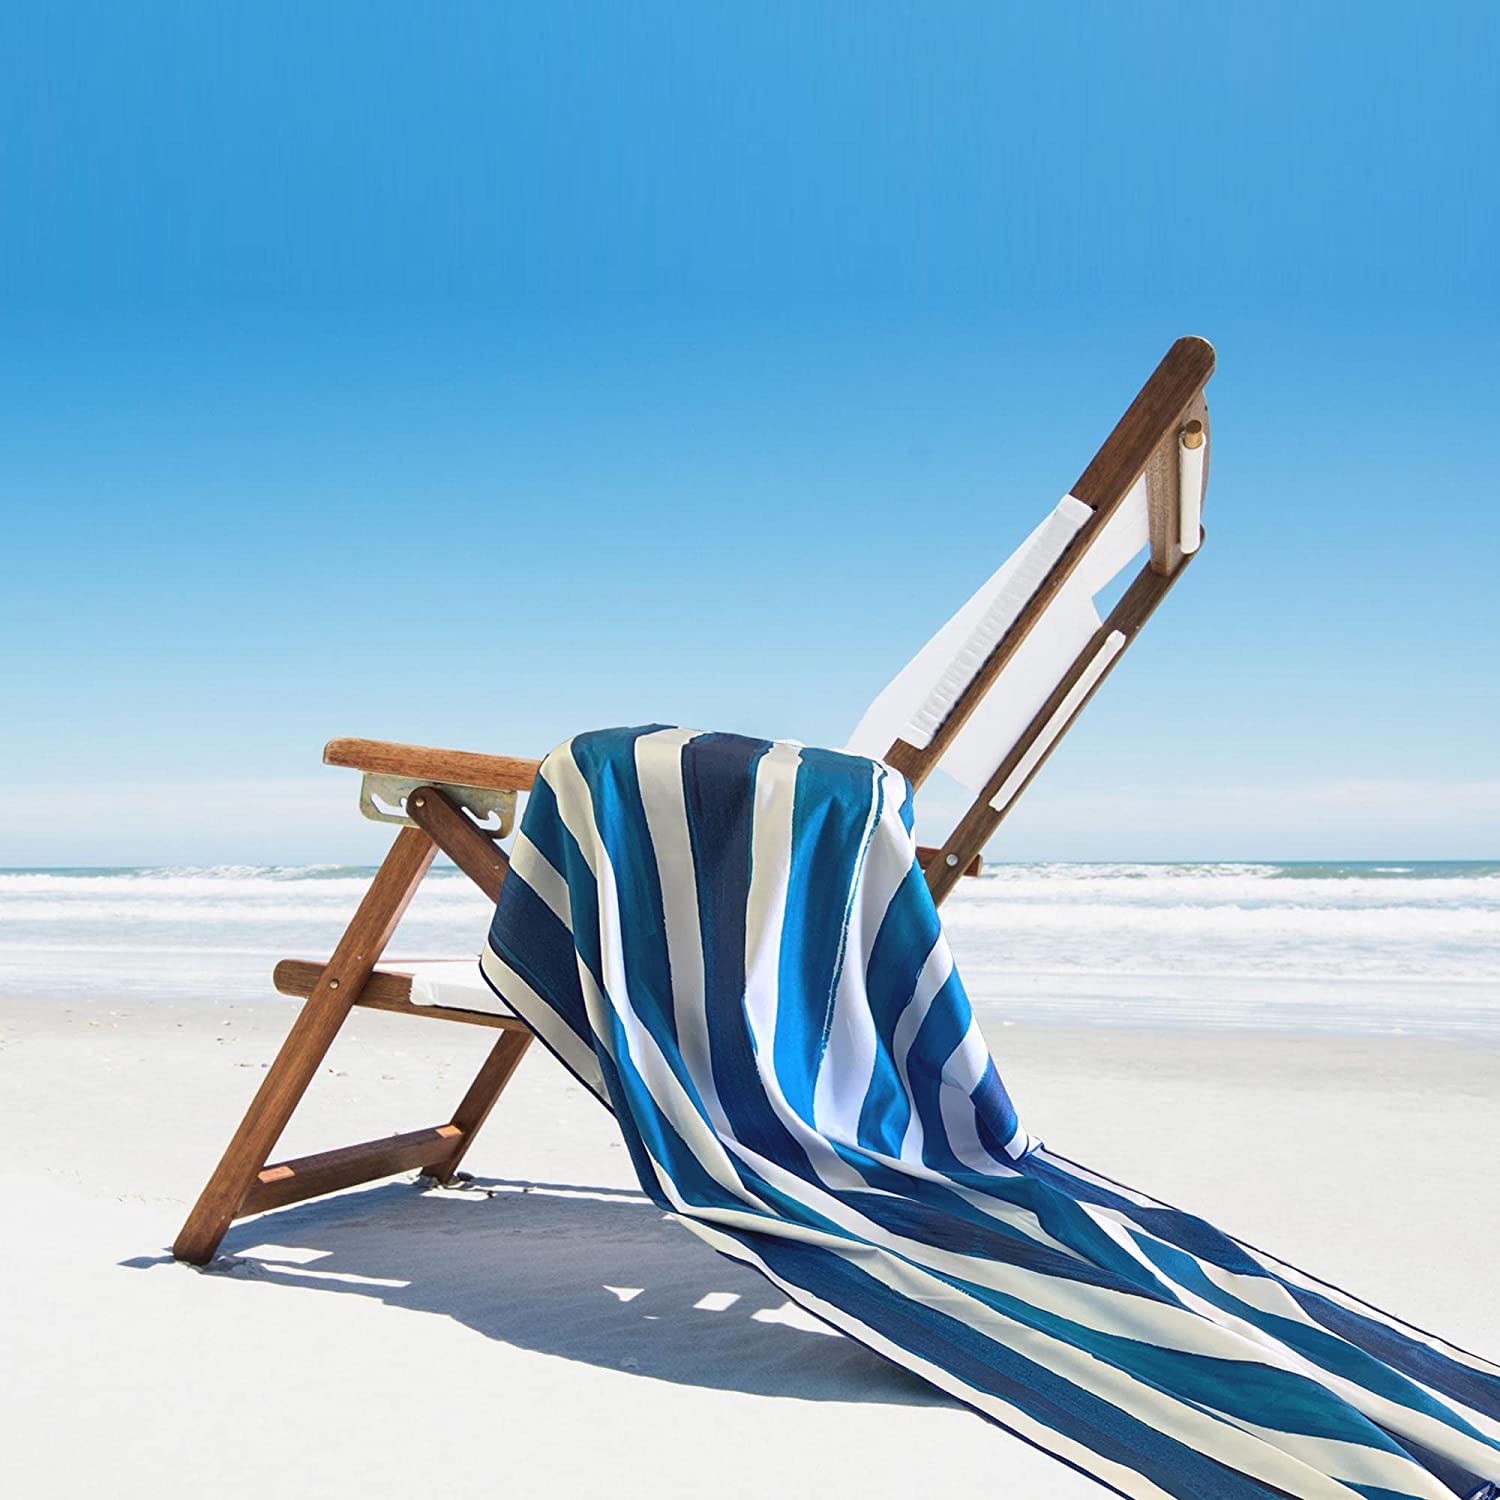 Ocean Blue Striped Beach Towel